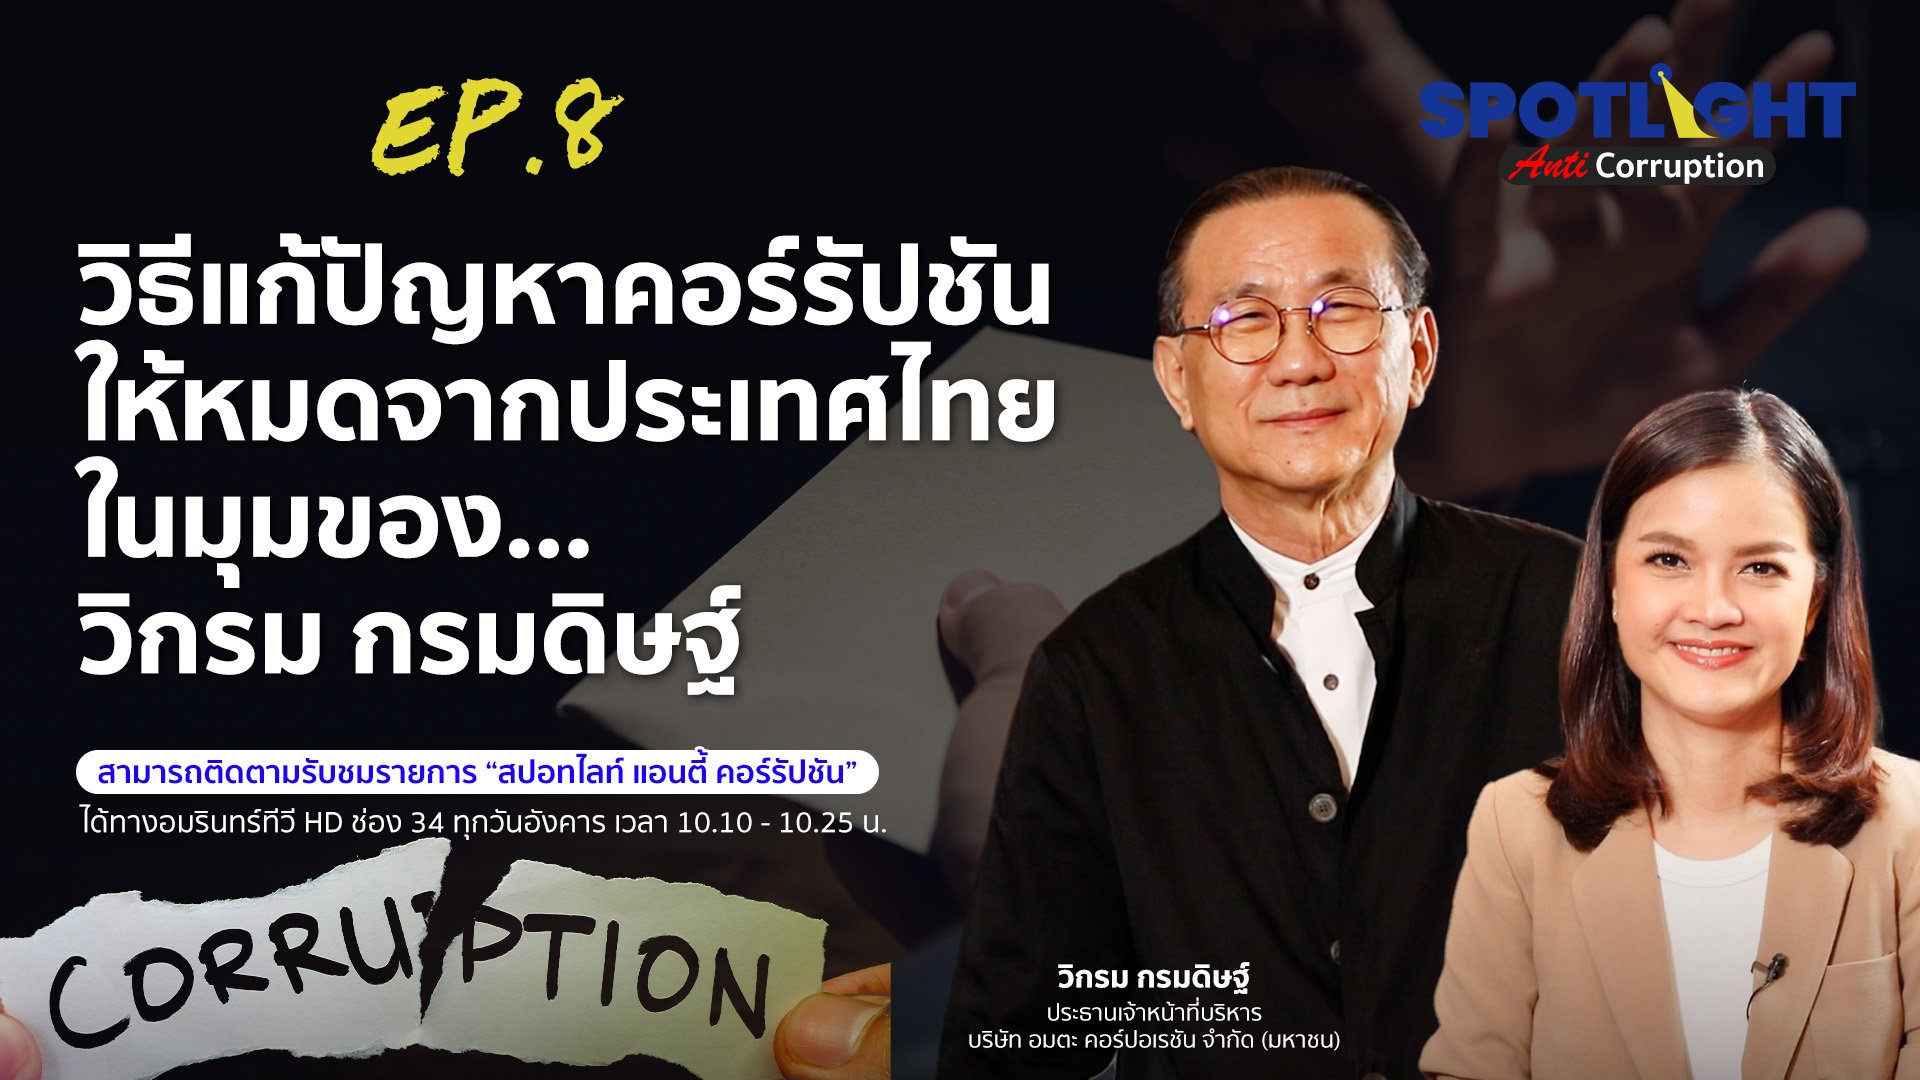 วิธีแก้ปัญหาคอร์รัปชันให้หมดจากประเทศไทย ในมุมของ…วิกรม กรมดิษฐ์ | Spotlight | 23 พ.ค. 66 | AMARIN TVHD34